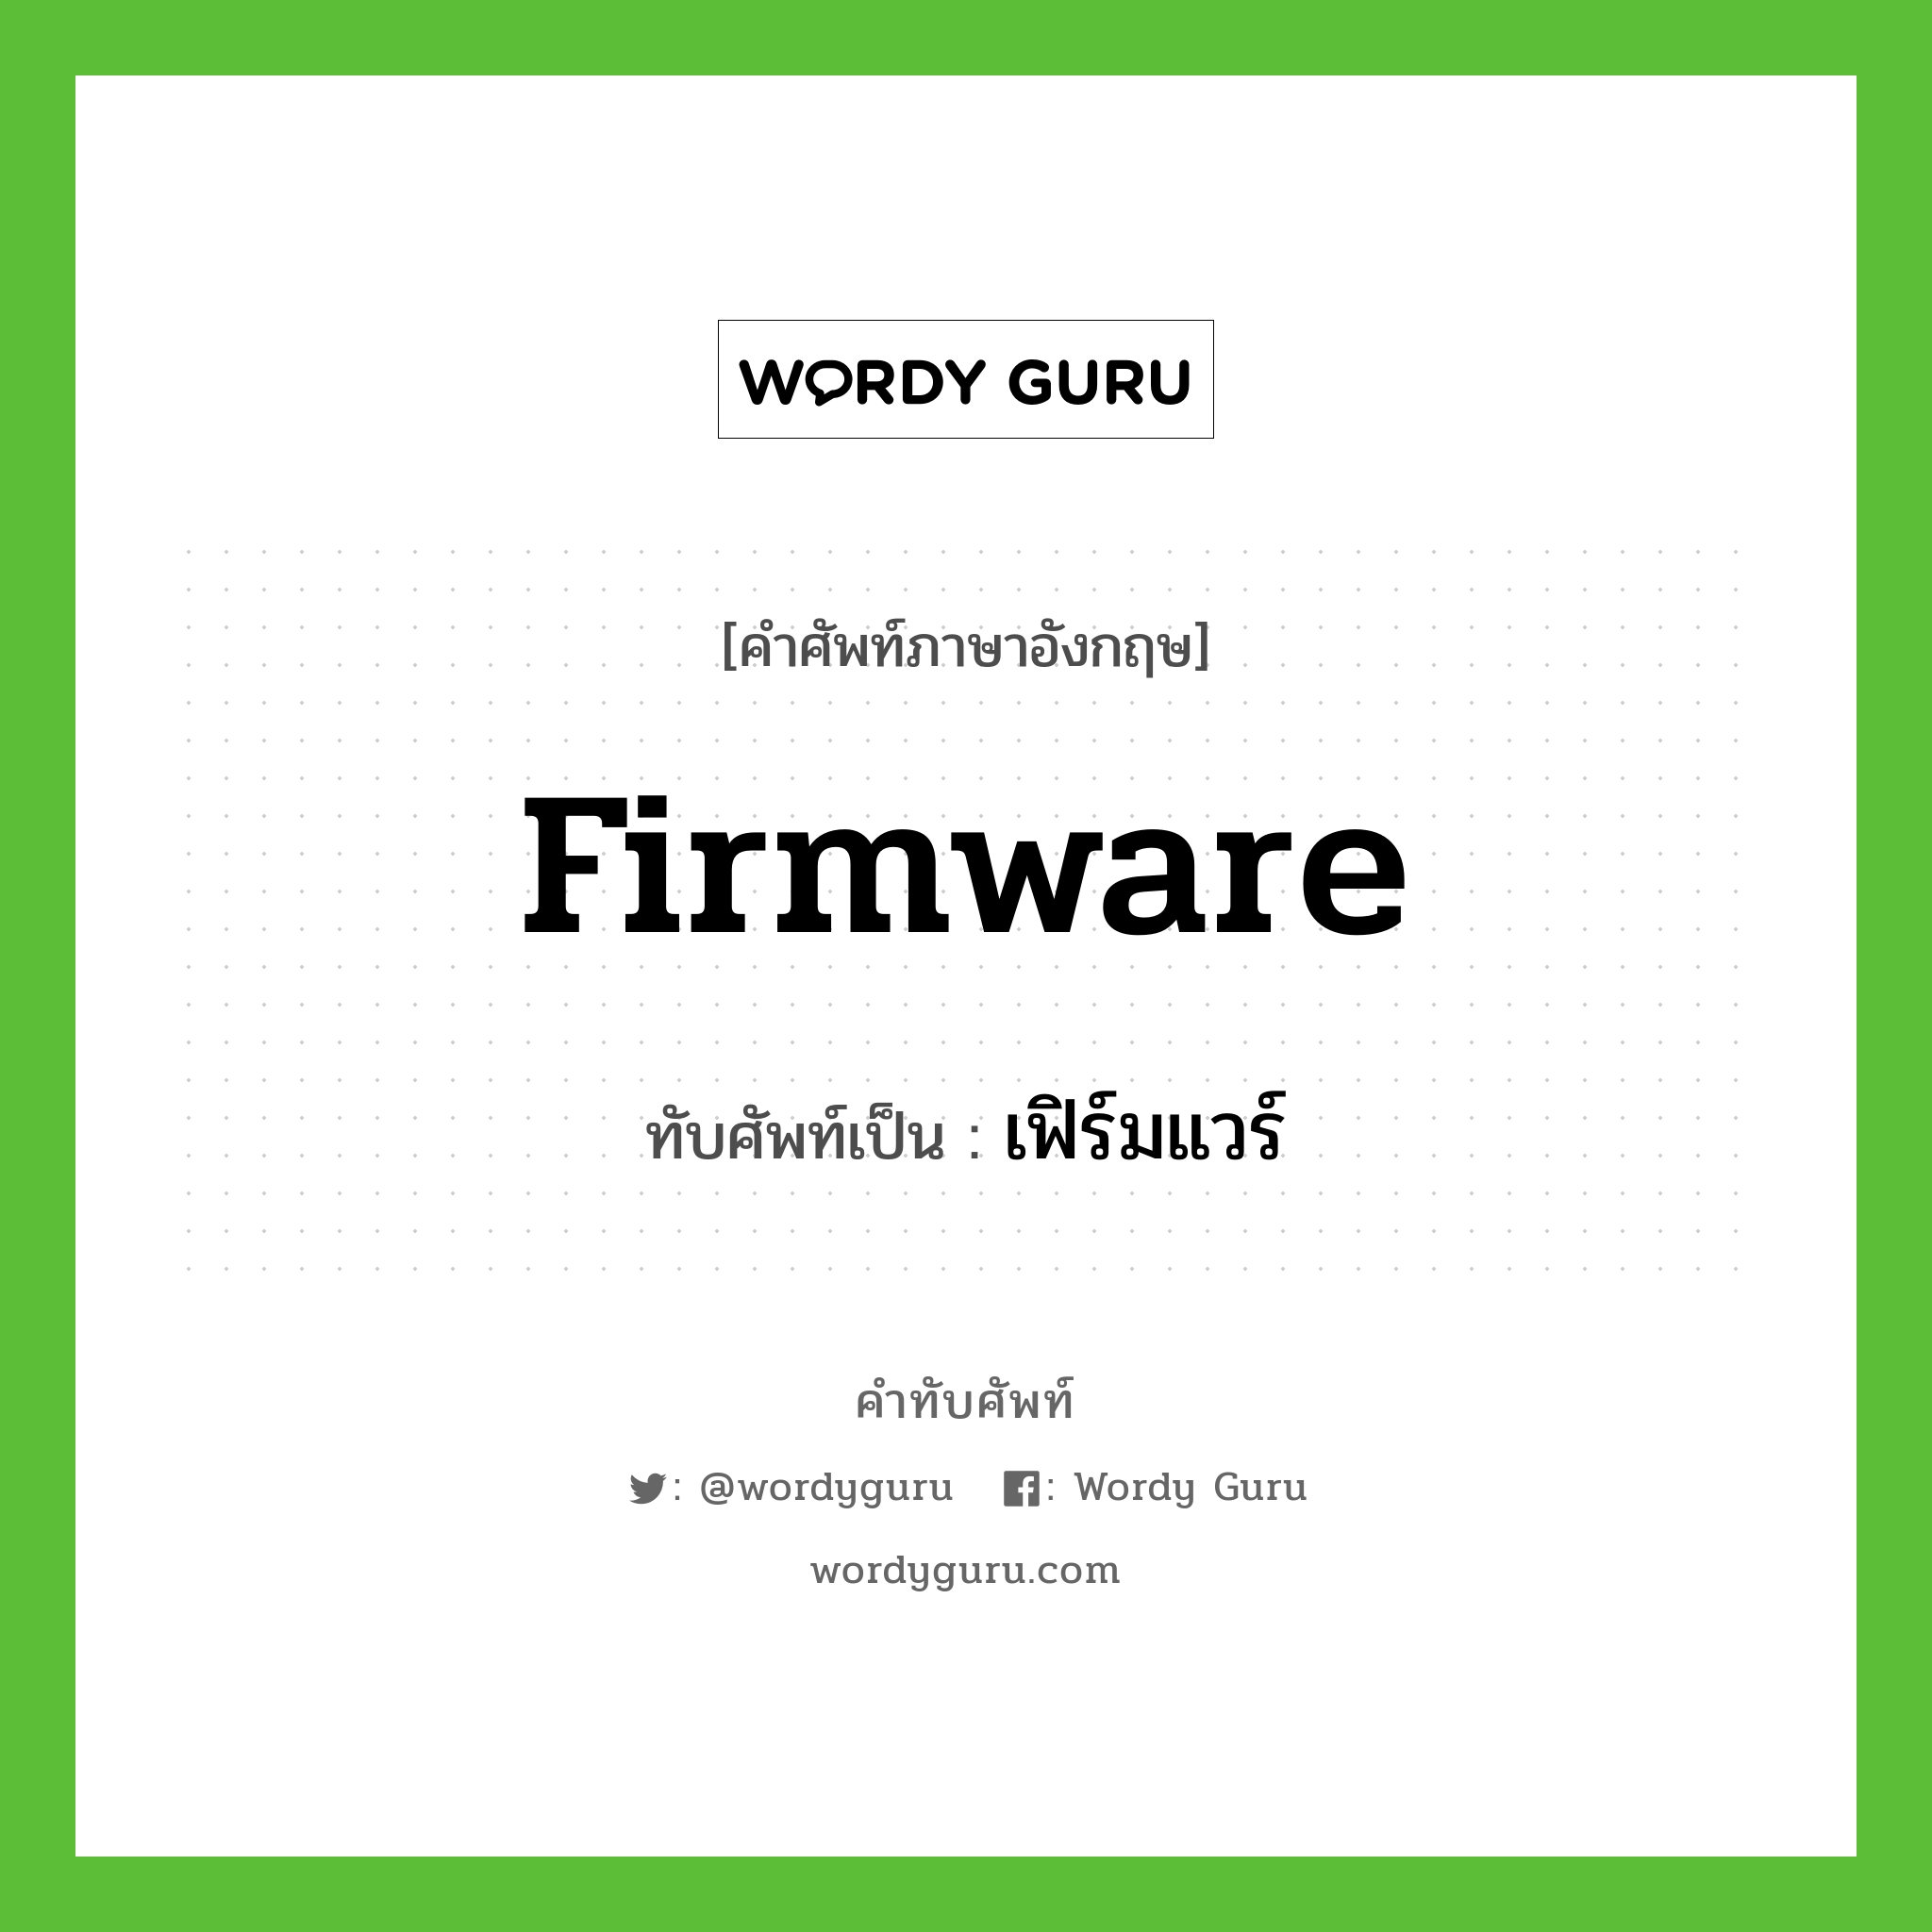 firmware เขียนเป็นคำไทยว่าอะไร?, คำศัพท์ภาษาอังกฤษ firmware ทับศัพท์เป็น เฟิร์มแวร์